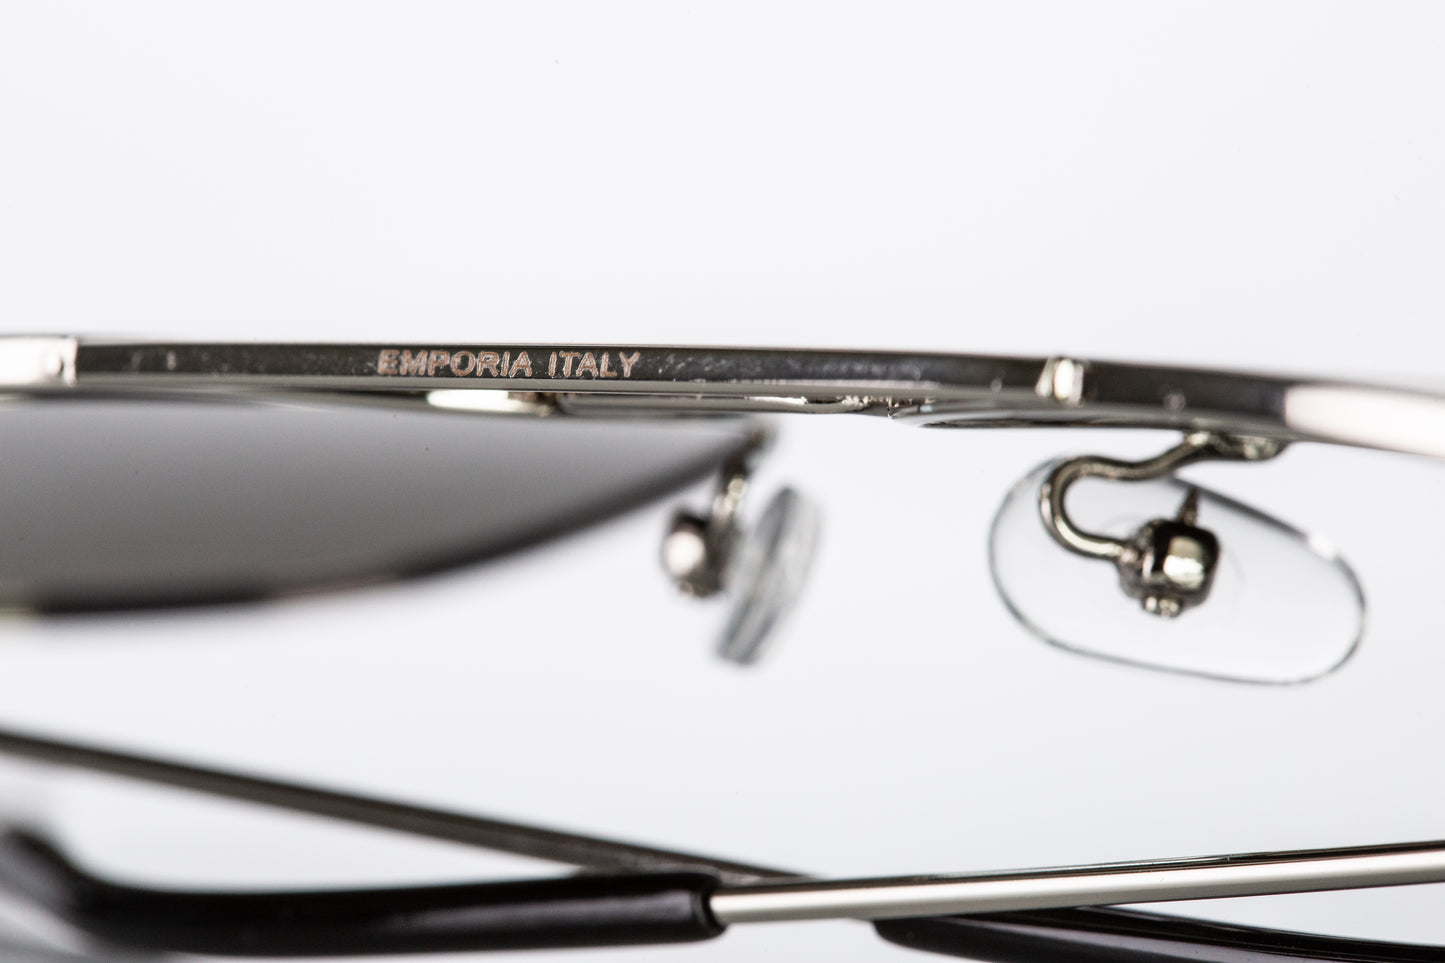 Emporia Itália -  Série Aviator "CHEFE", óculos de sol com filtro UV polarizados com estojo rígido e pano de limpeza, lentes de proteção solar de cor cinzentas escuras, armação prateada